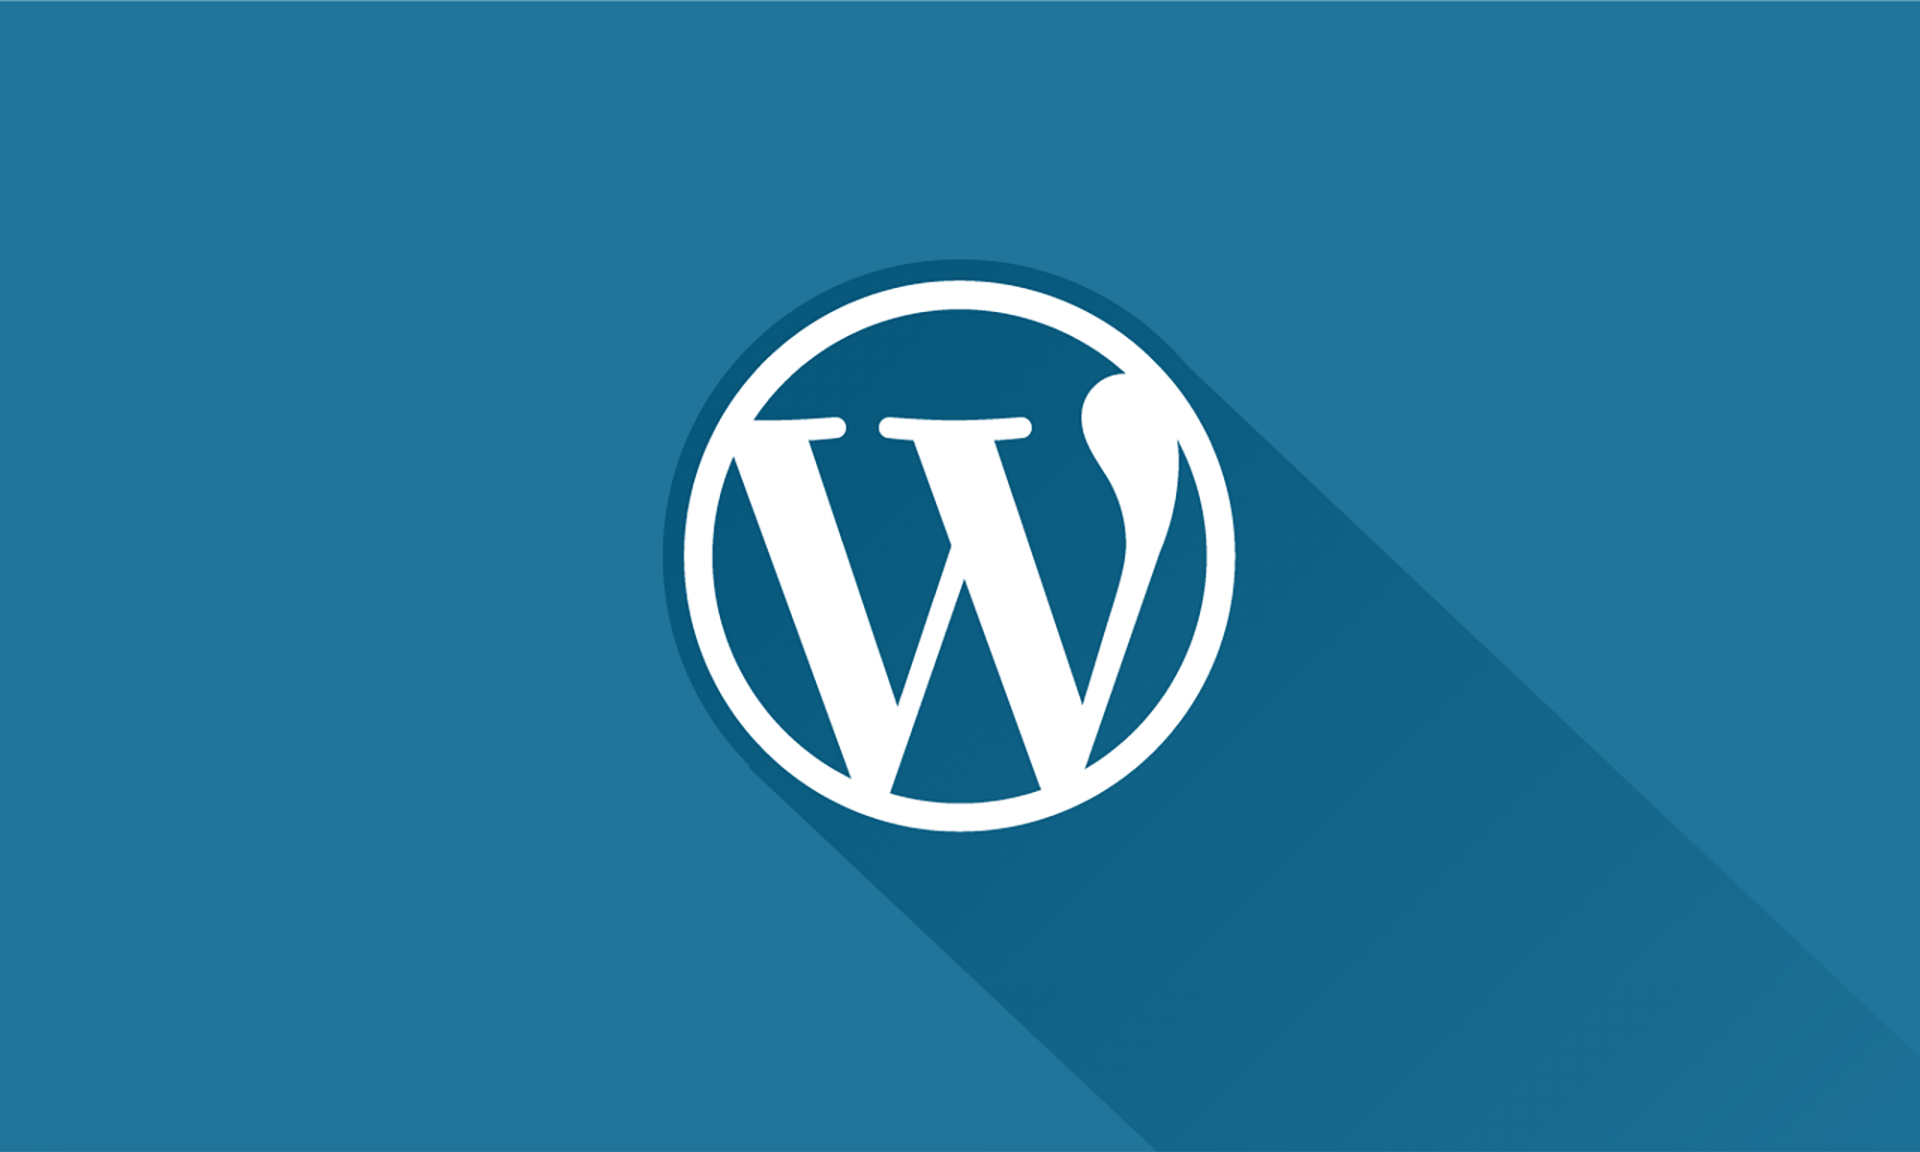 Wordpress your. Вордпресс. Cms WORDPRESS. WORDPRESS логотип. Вордпресс картинки.